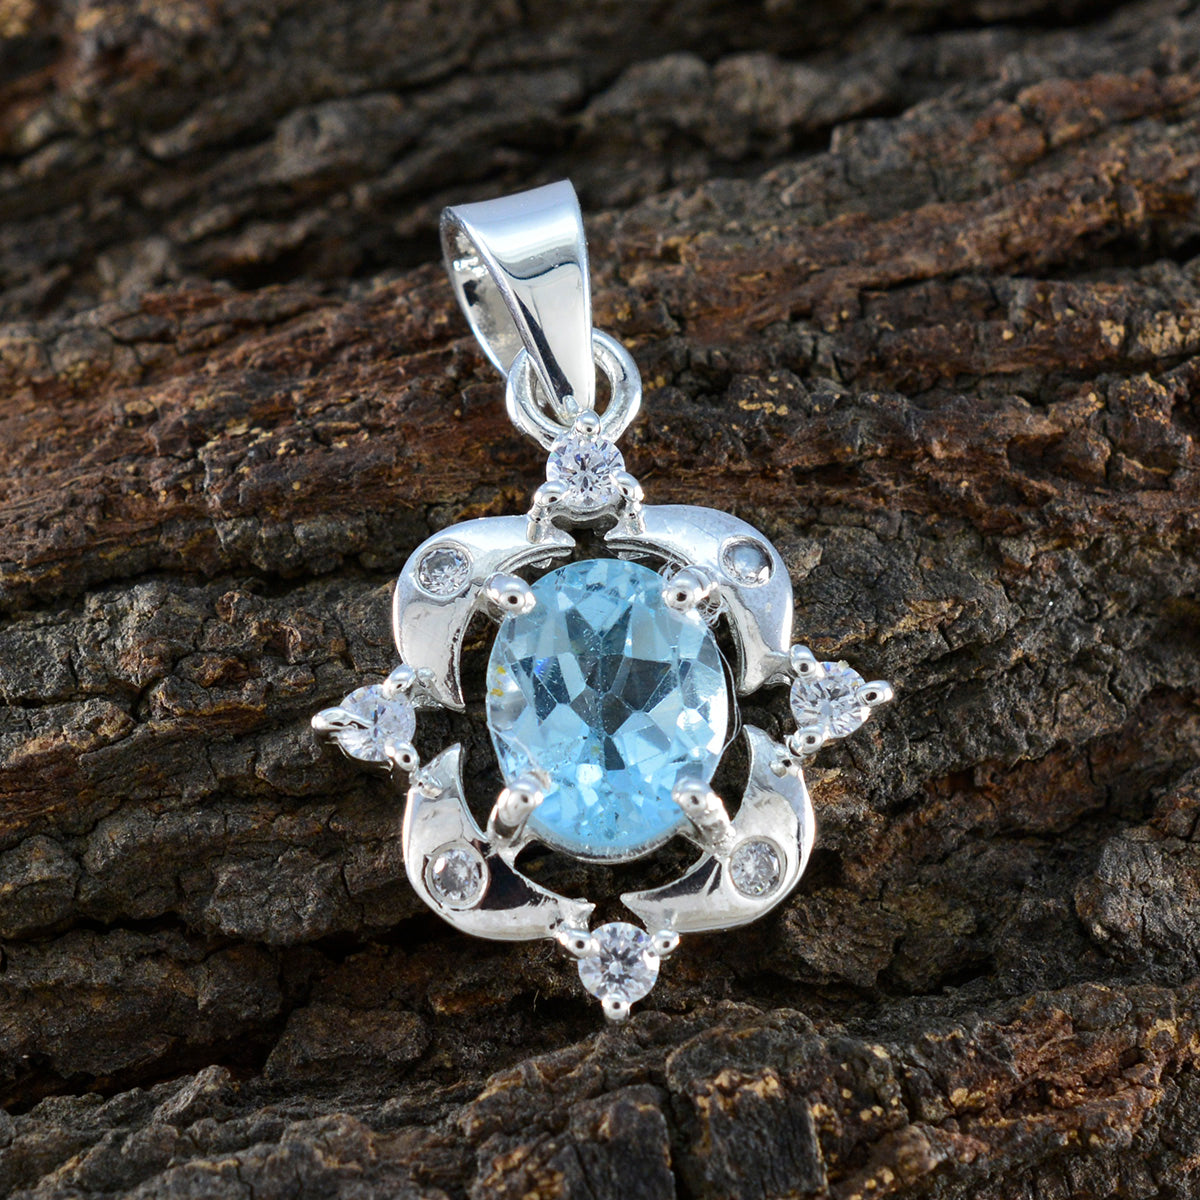 Riyo beaut piedra preciosa ovalada facetada azul topacio azul colgante de plata de ley regalo para hecho a mano